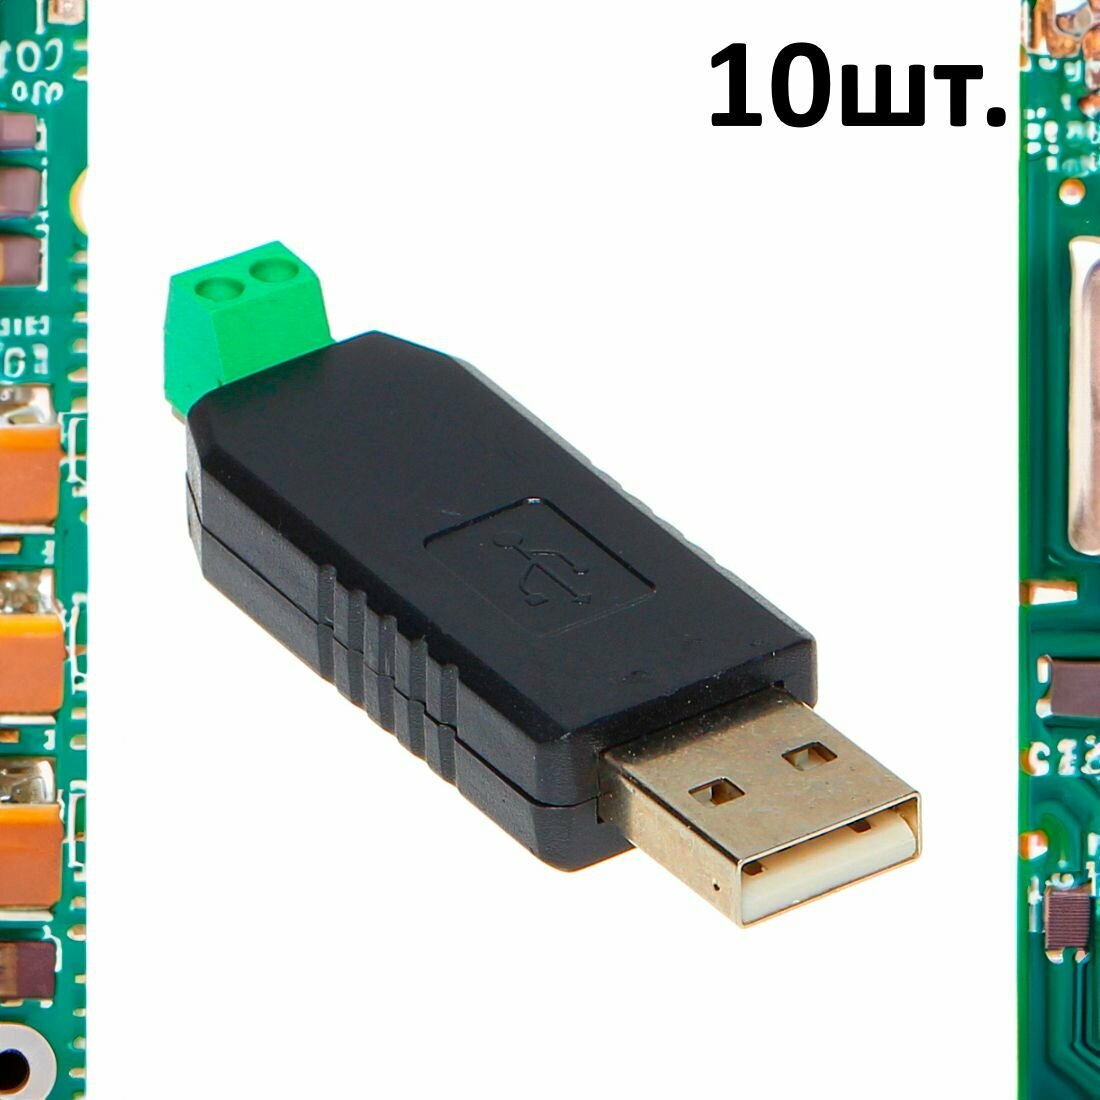 Преобразователь интерфейсов USB в RS485, драйвер UR485 конвертер 10шт.